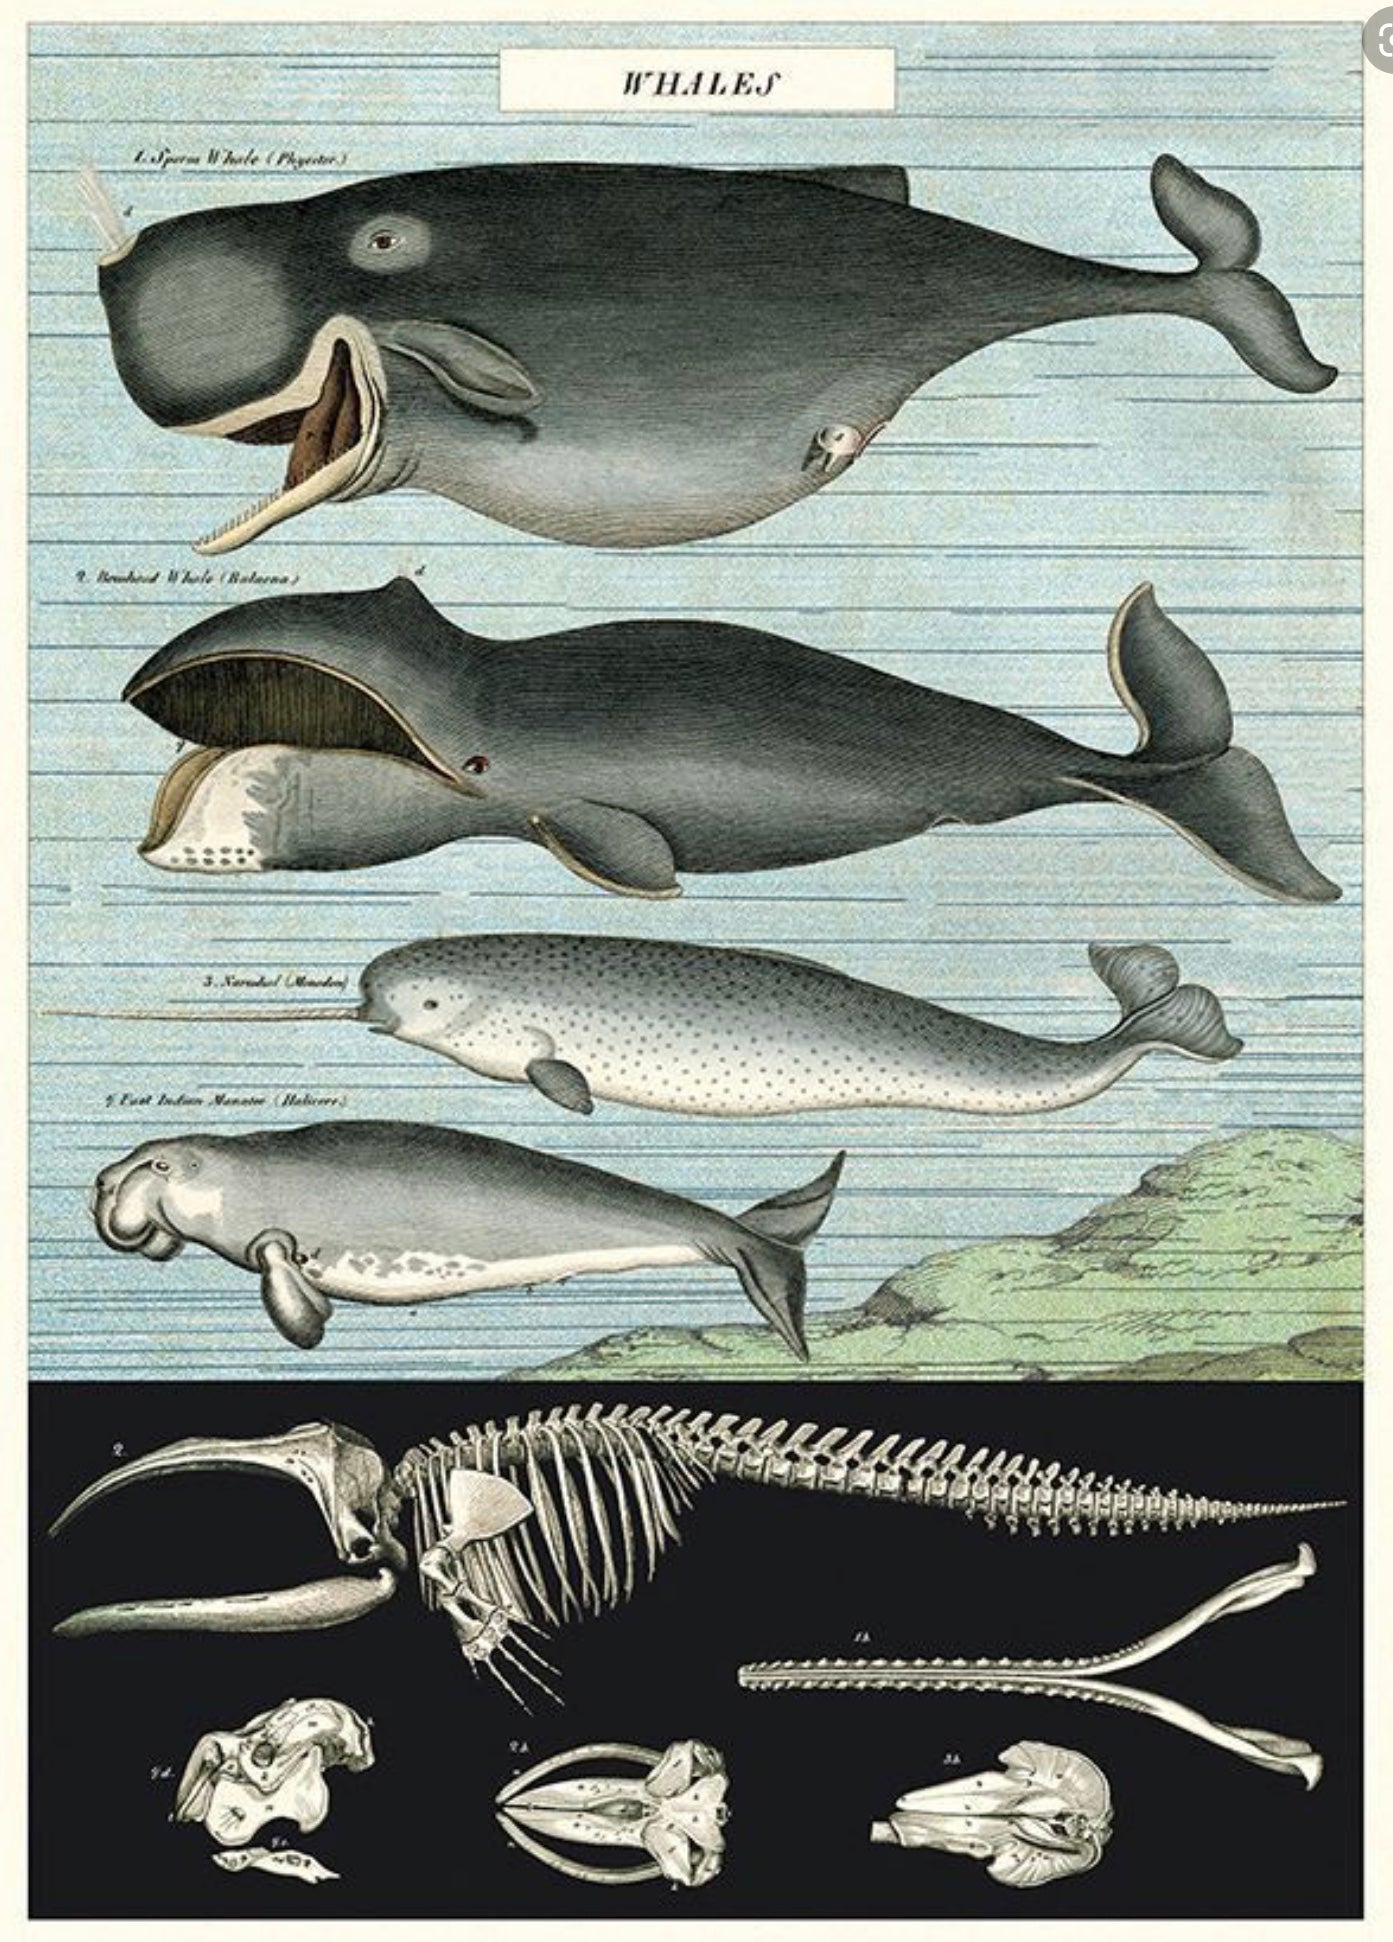 Whale print